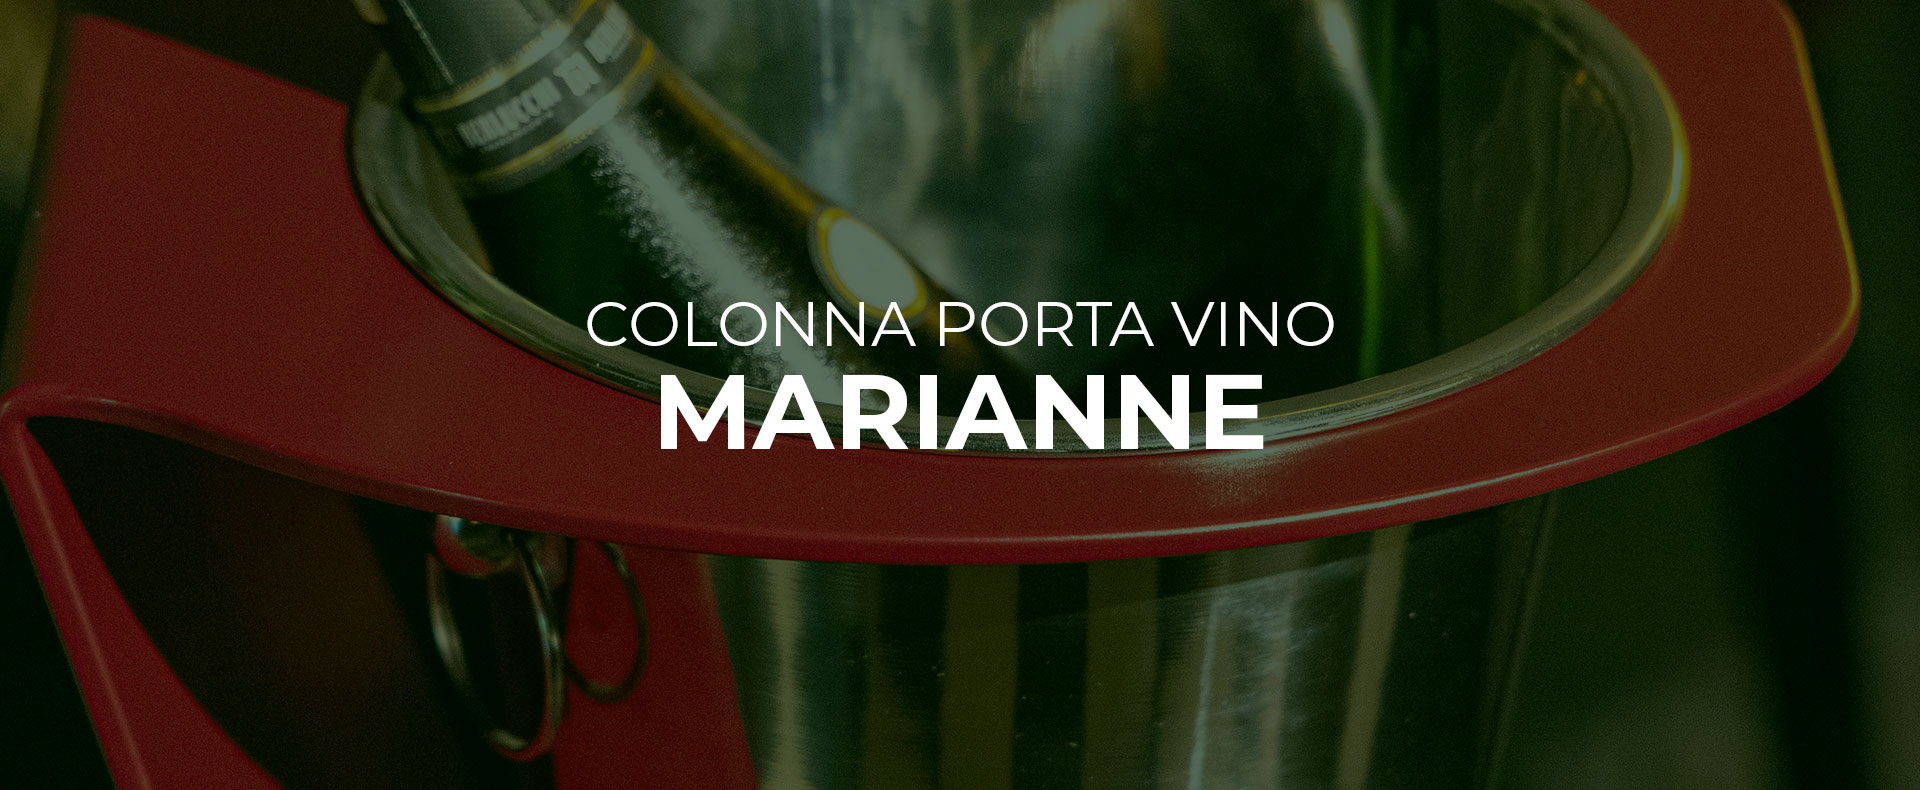 colonna-porta-vino-cestello-vino-champagne-design-ferro-personalizzata-a-mano-orsolini-deisgn-velletri-roma-italia-spedizione